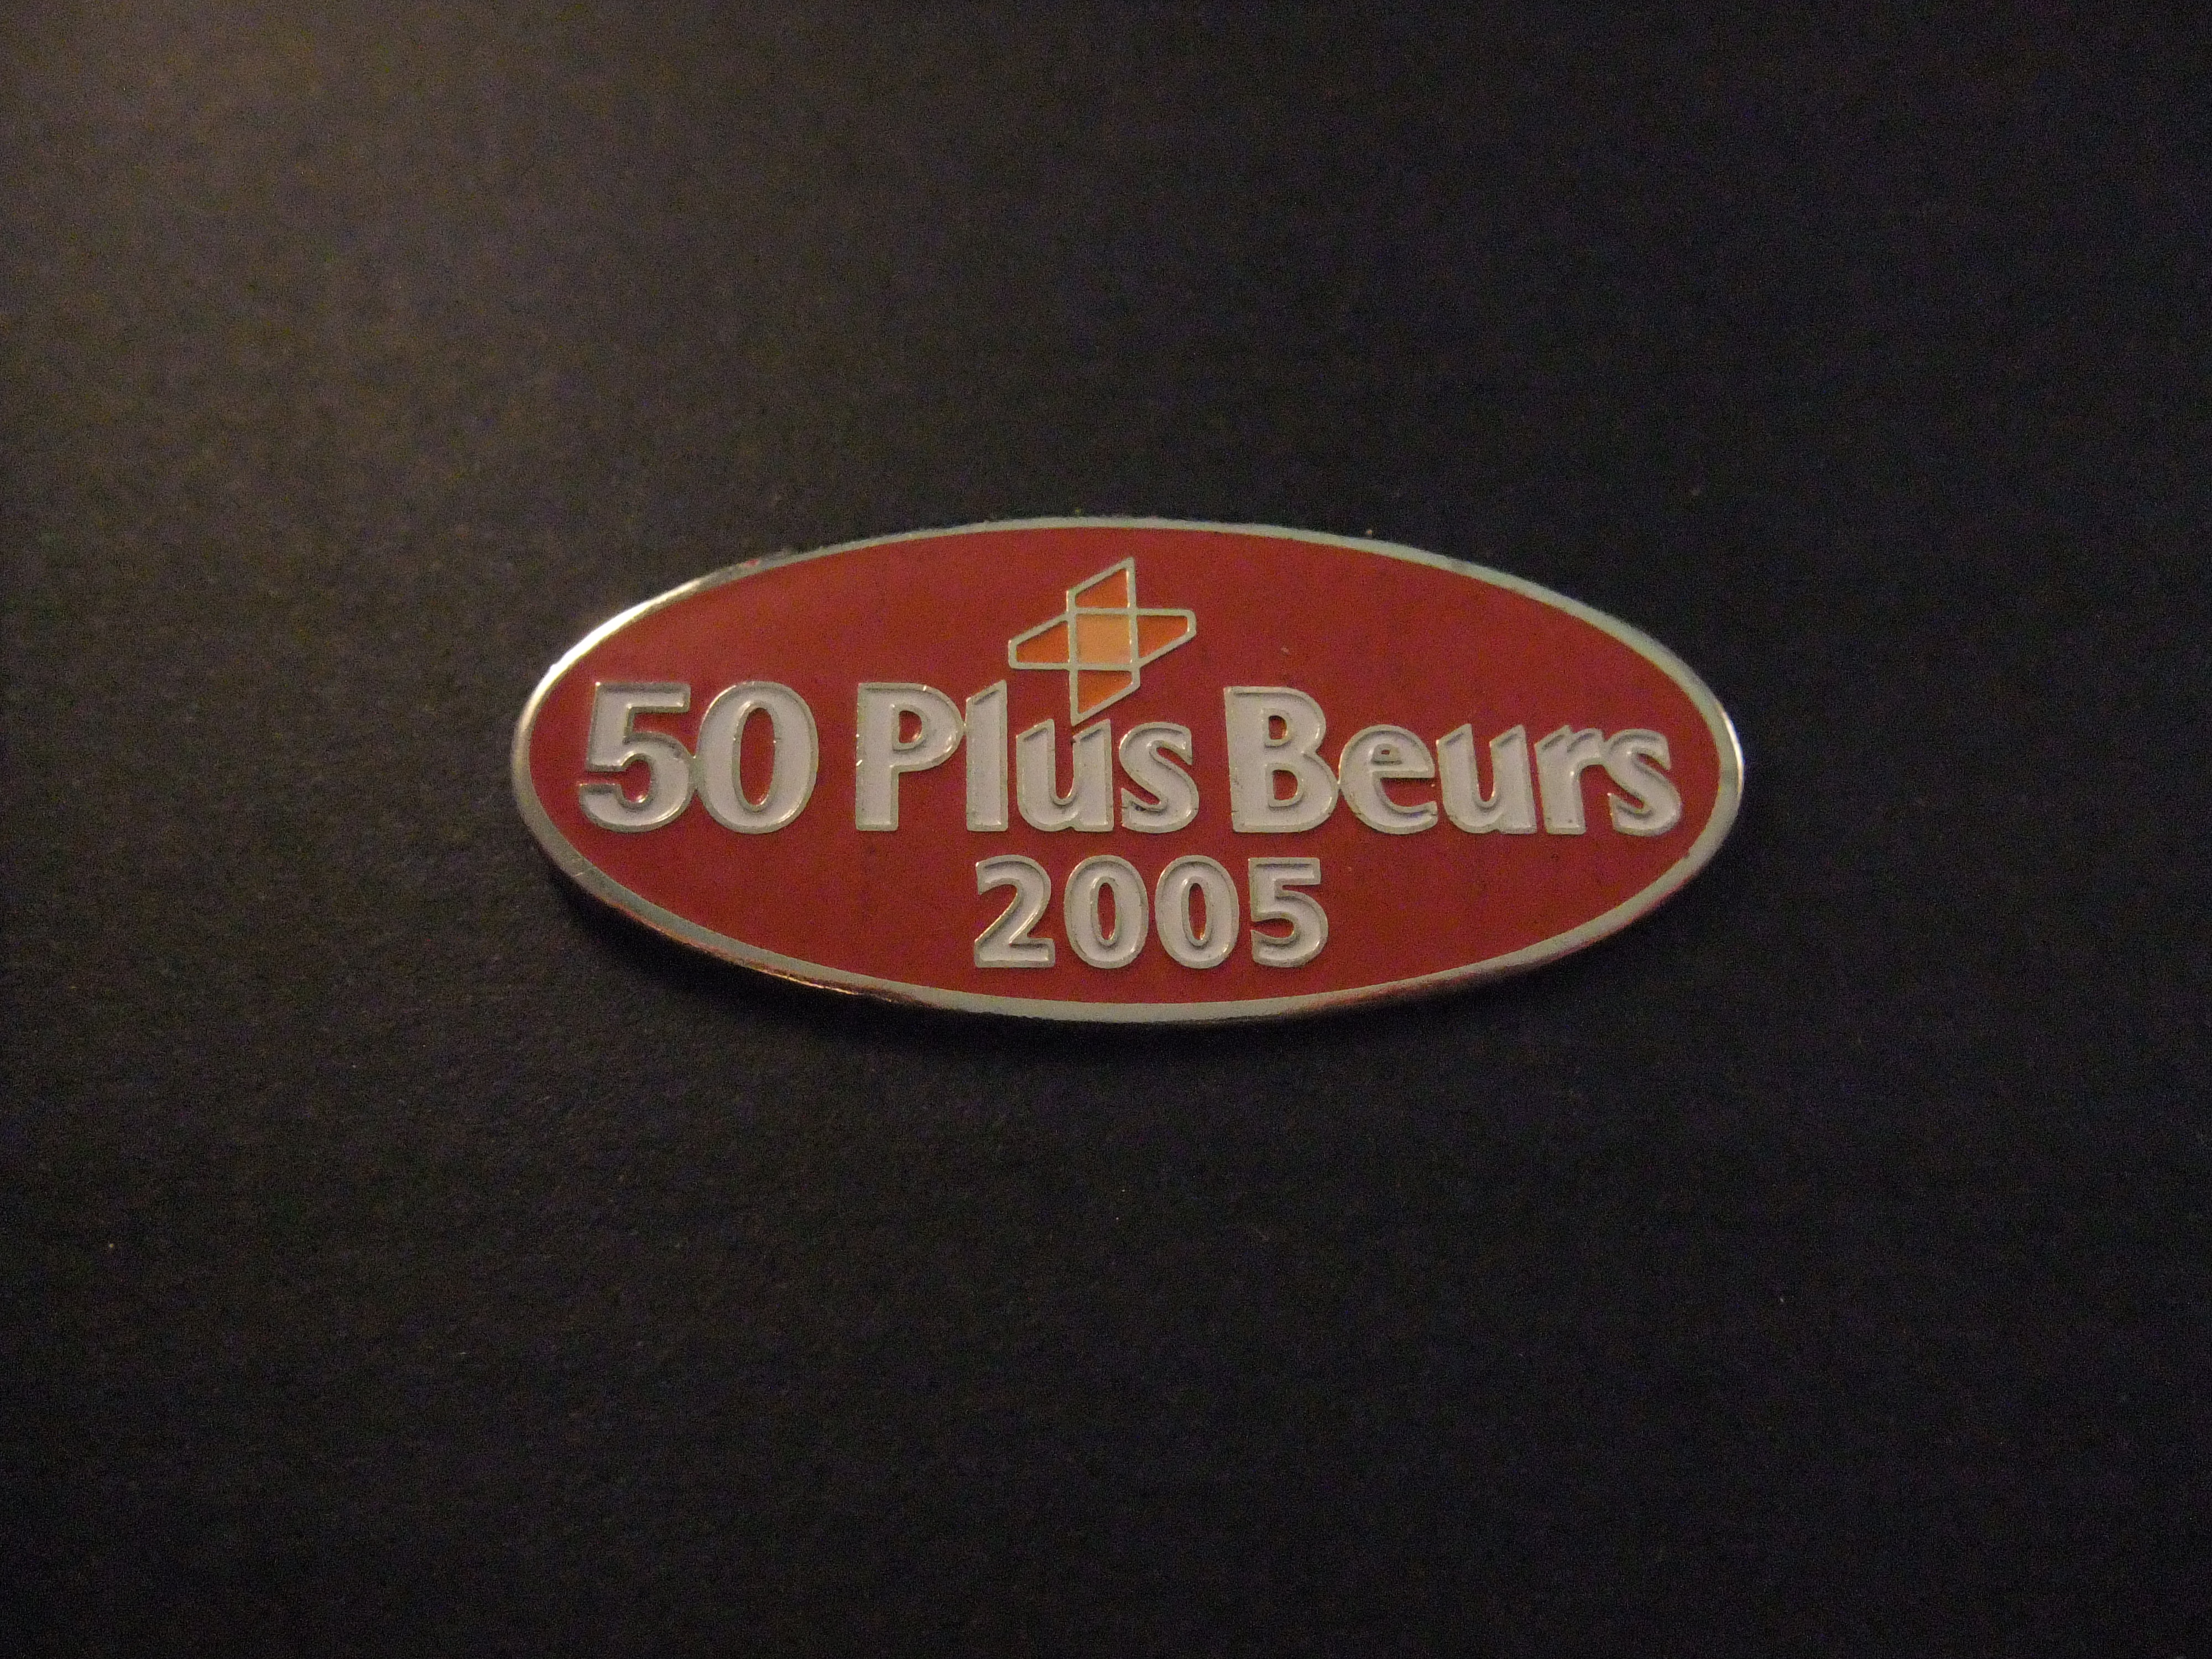 50 plus beurs (50PlusBeurs) 2005 Jaarbeurs Utrecht logo